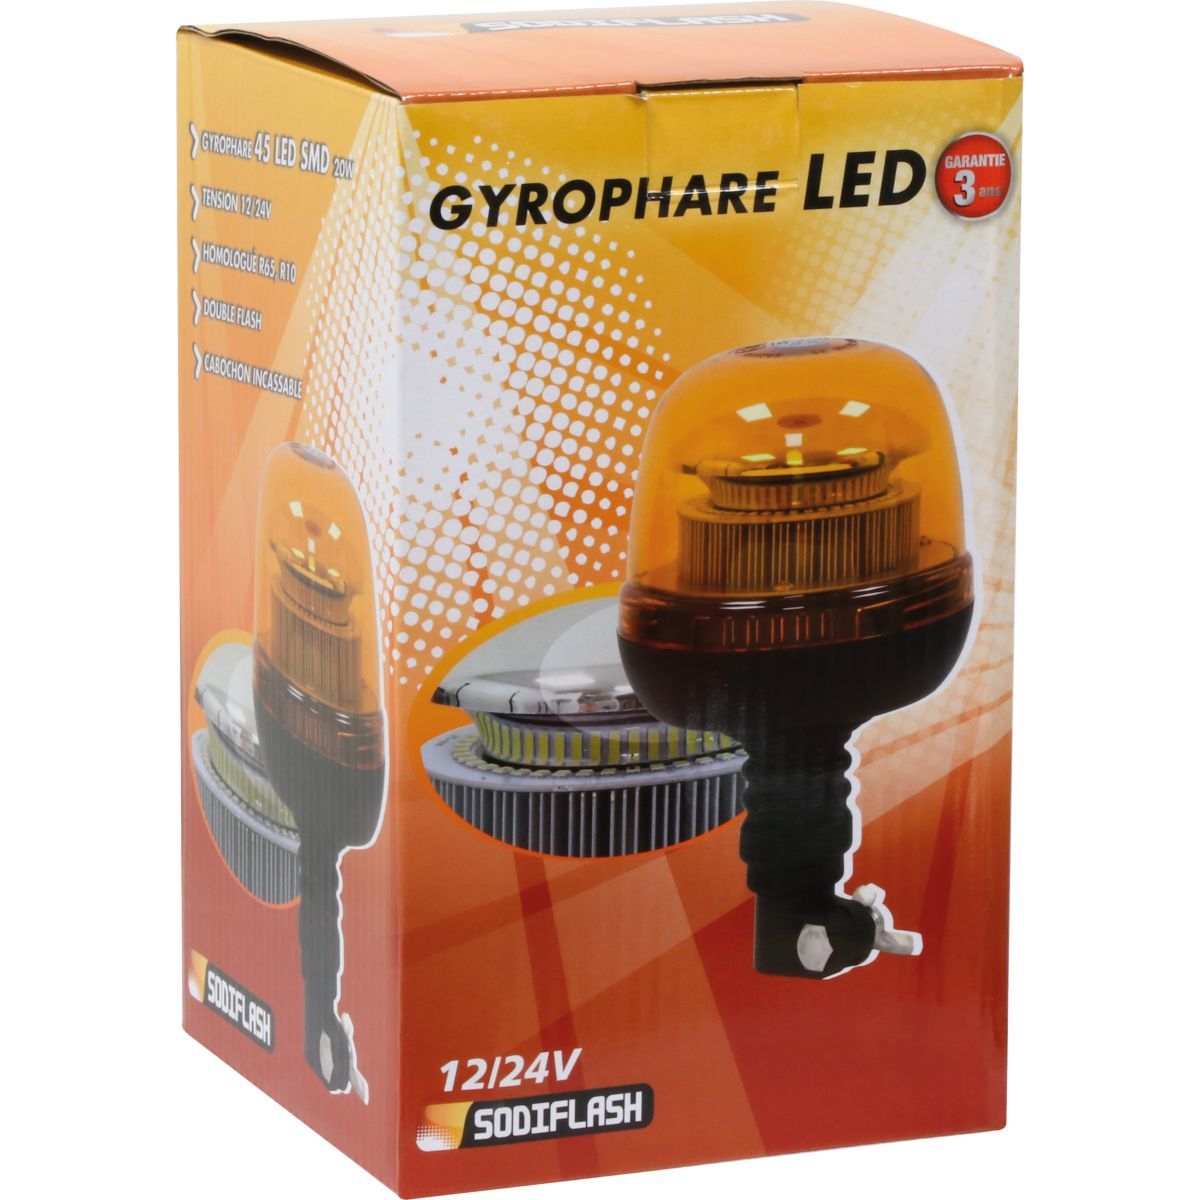 Gyrophare LED Double étage 110mm : achetez au meilleur prix sur Proteclight